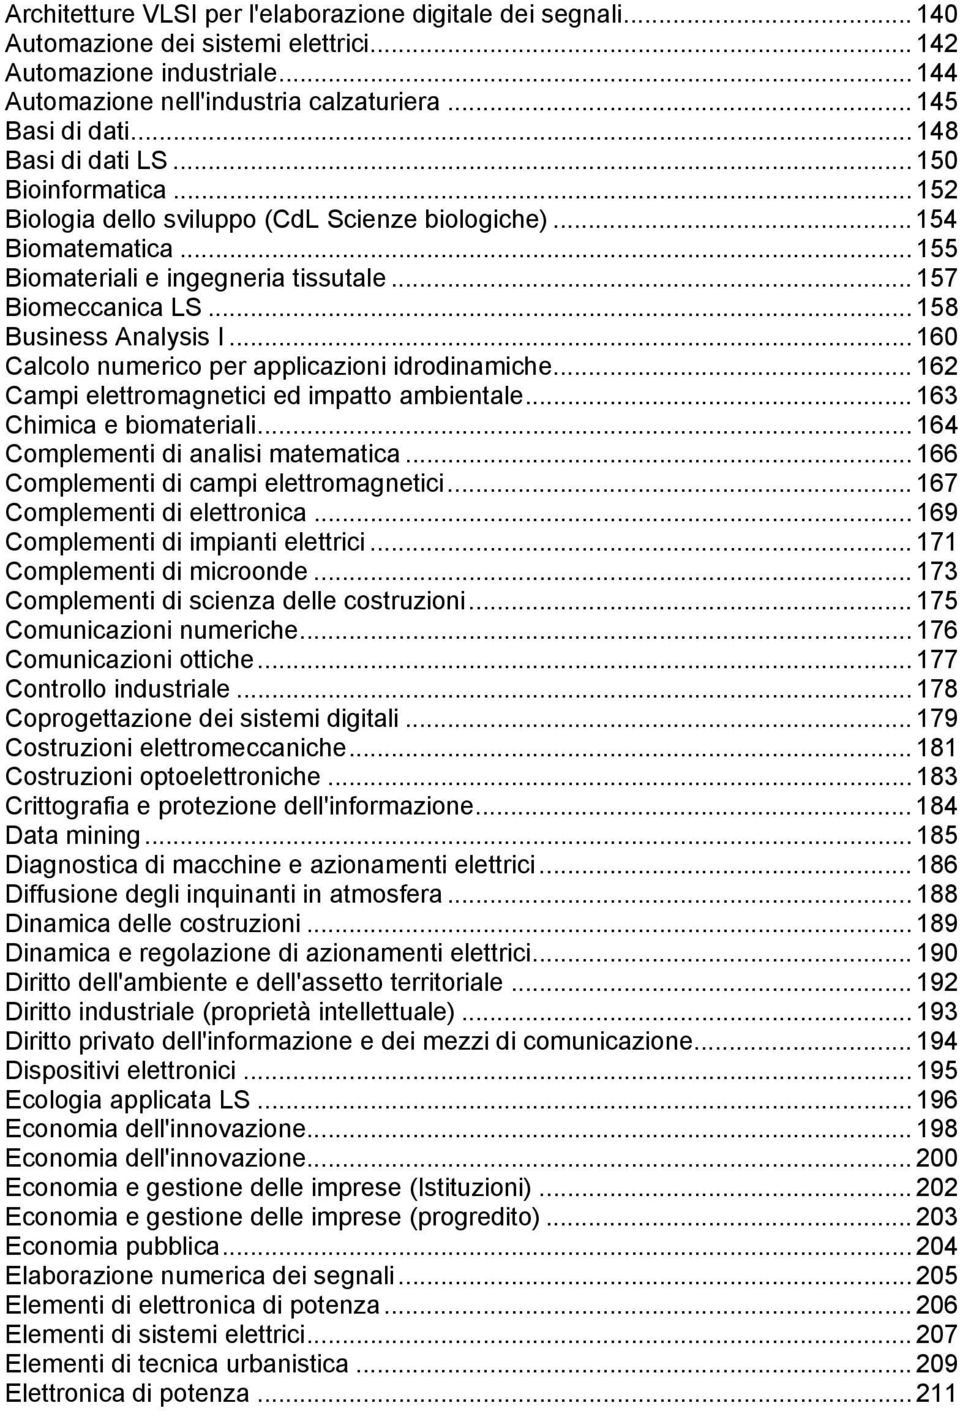 .. 158 Business Analysis I... 160 Calcolo numerico per applicazioni idrodinamiche... 162 Campi elettromagnetici ed impatto ambientale... 163 Chimica e biomateriali.